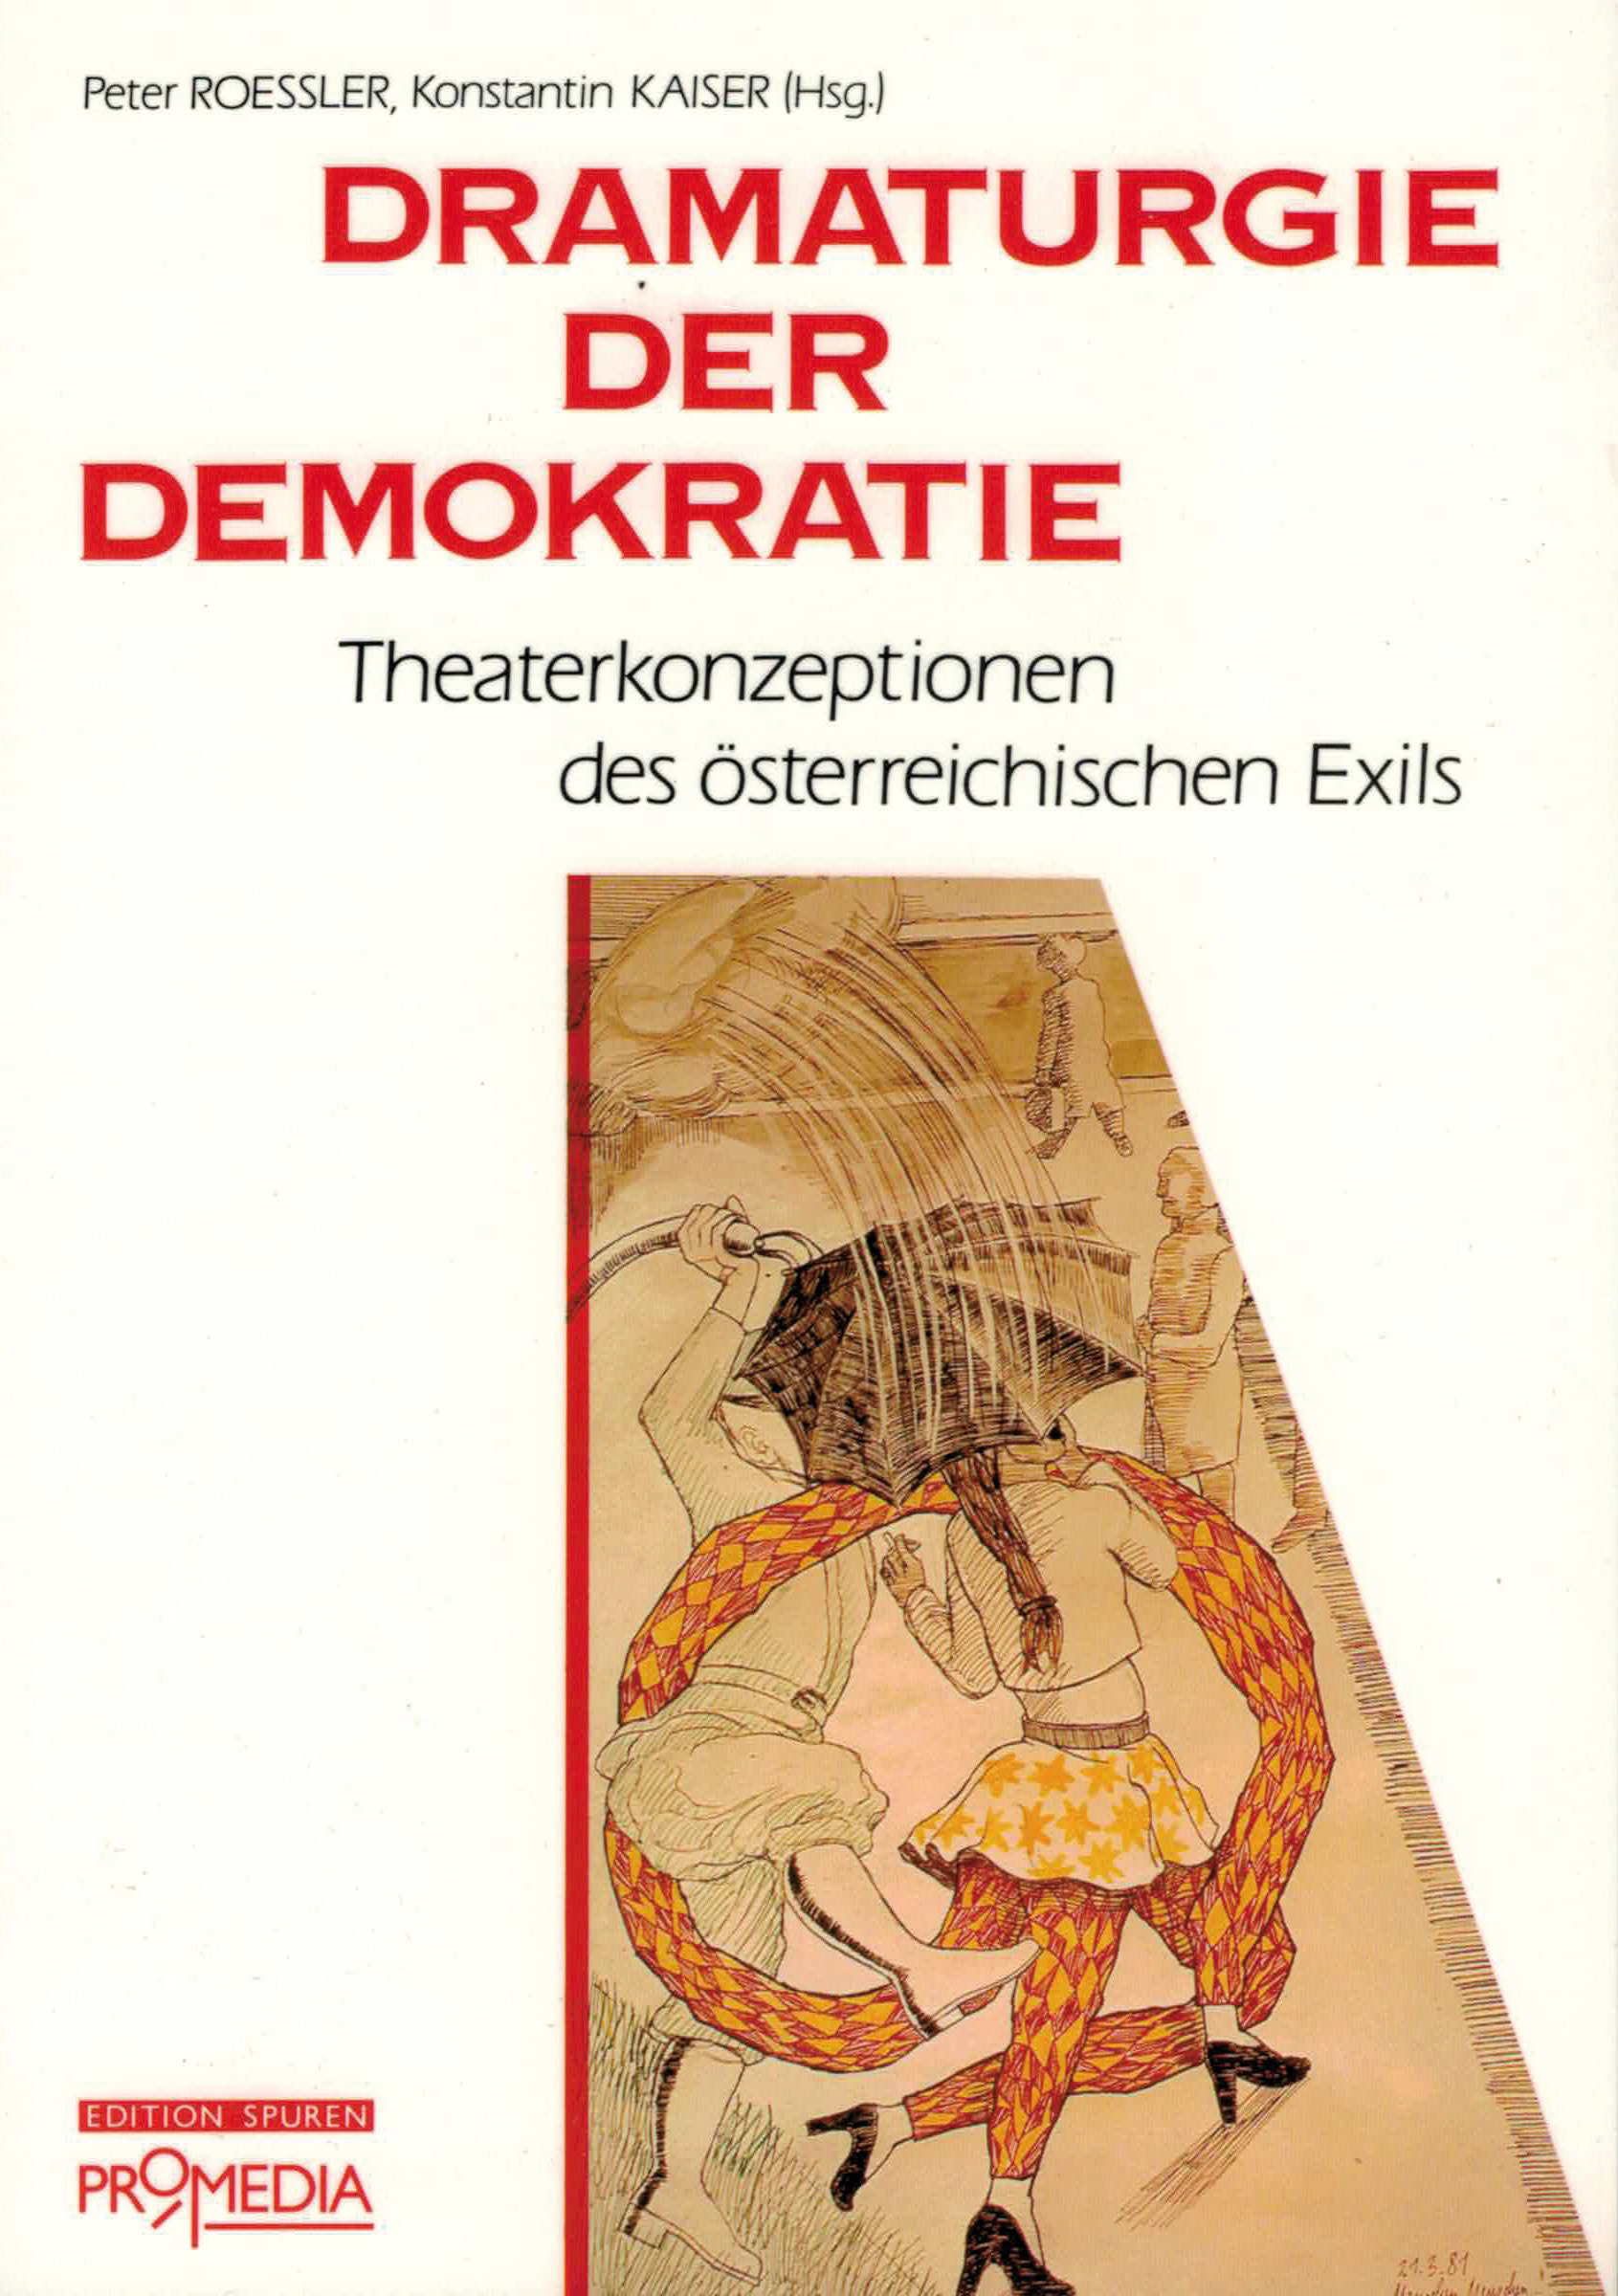 [Cover] Dramaturgie der Demokratie